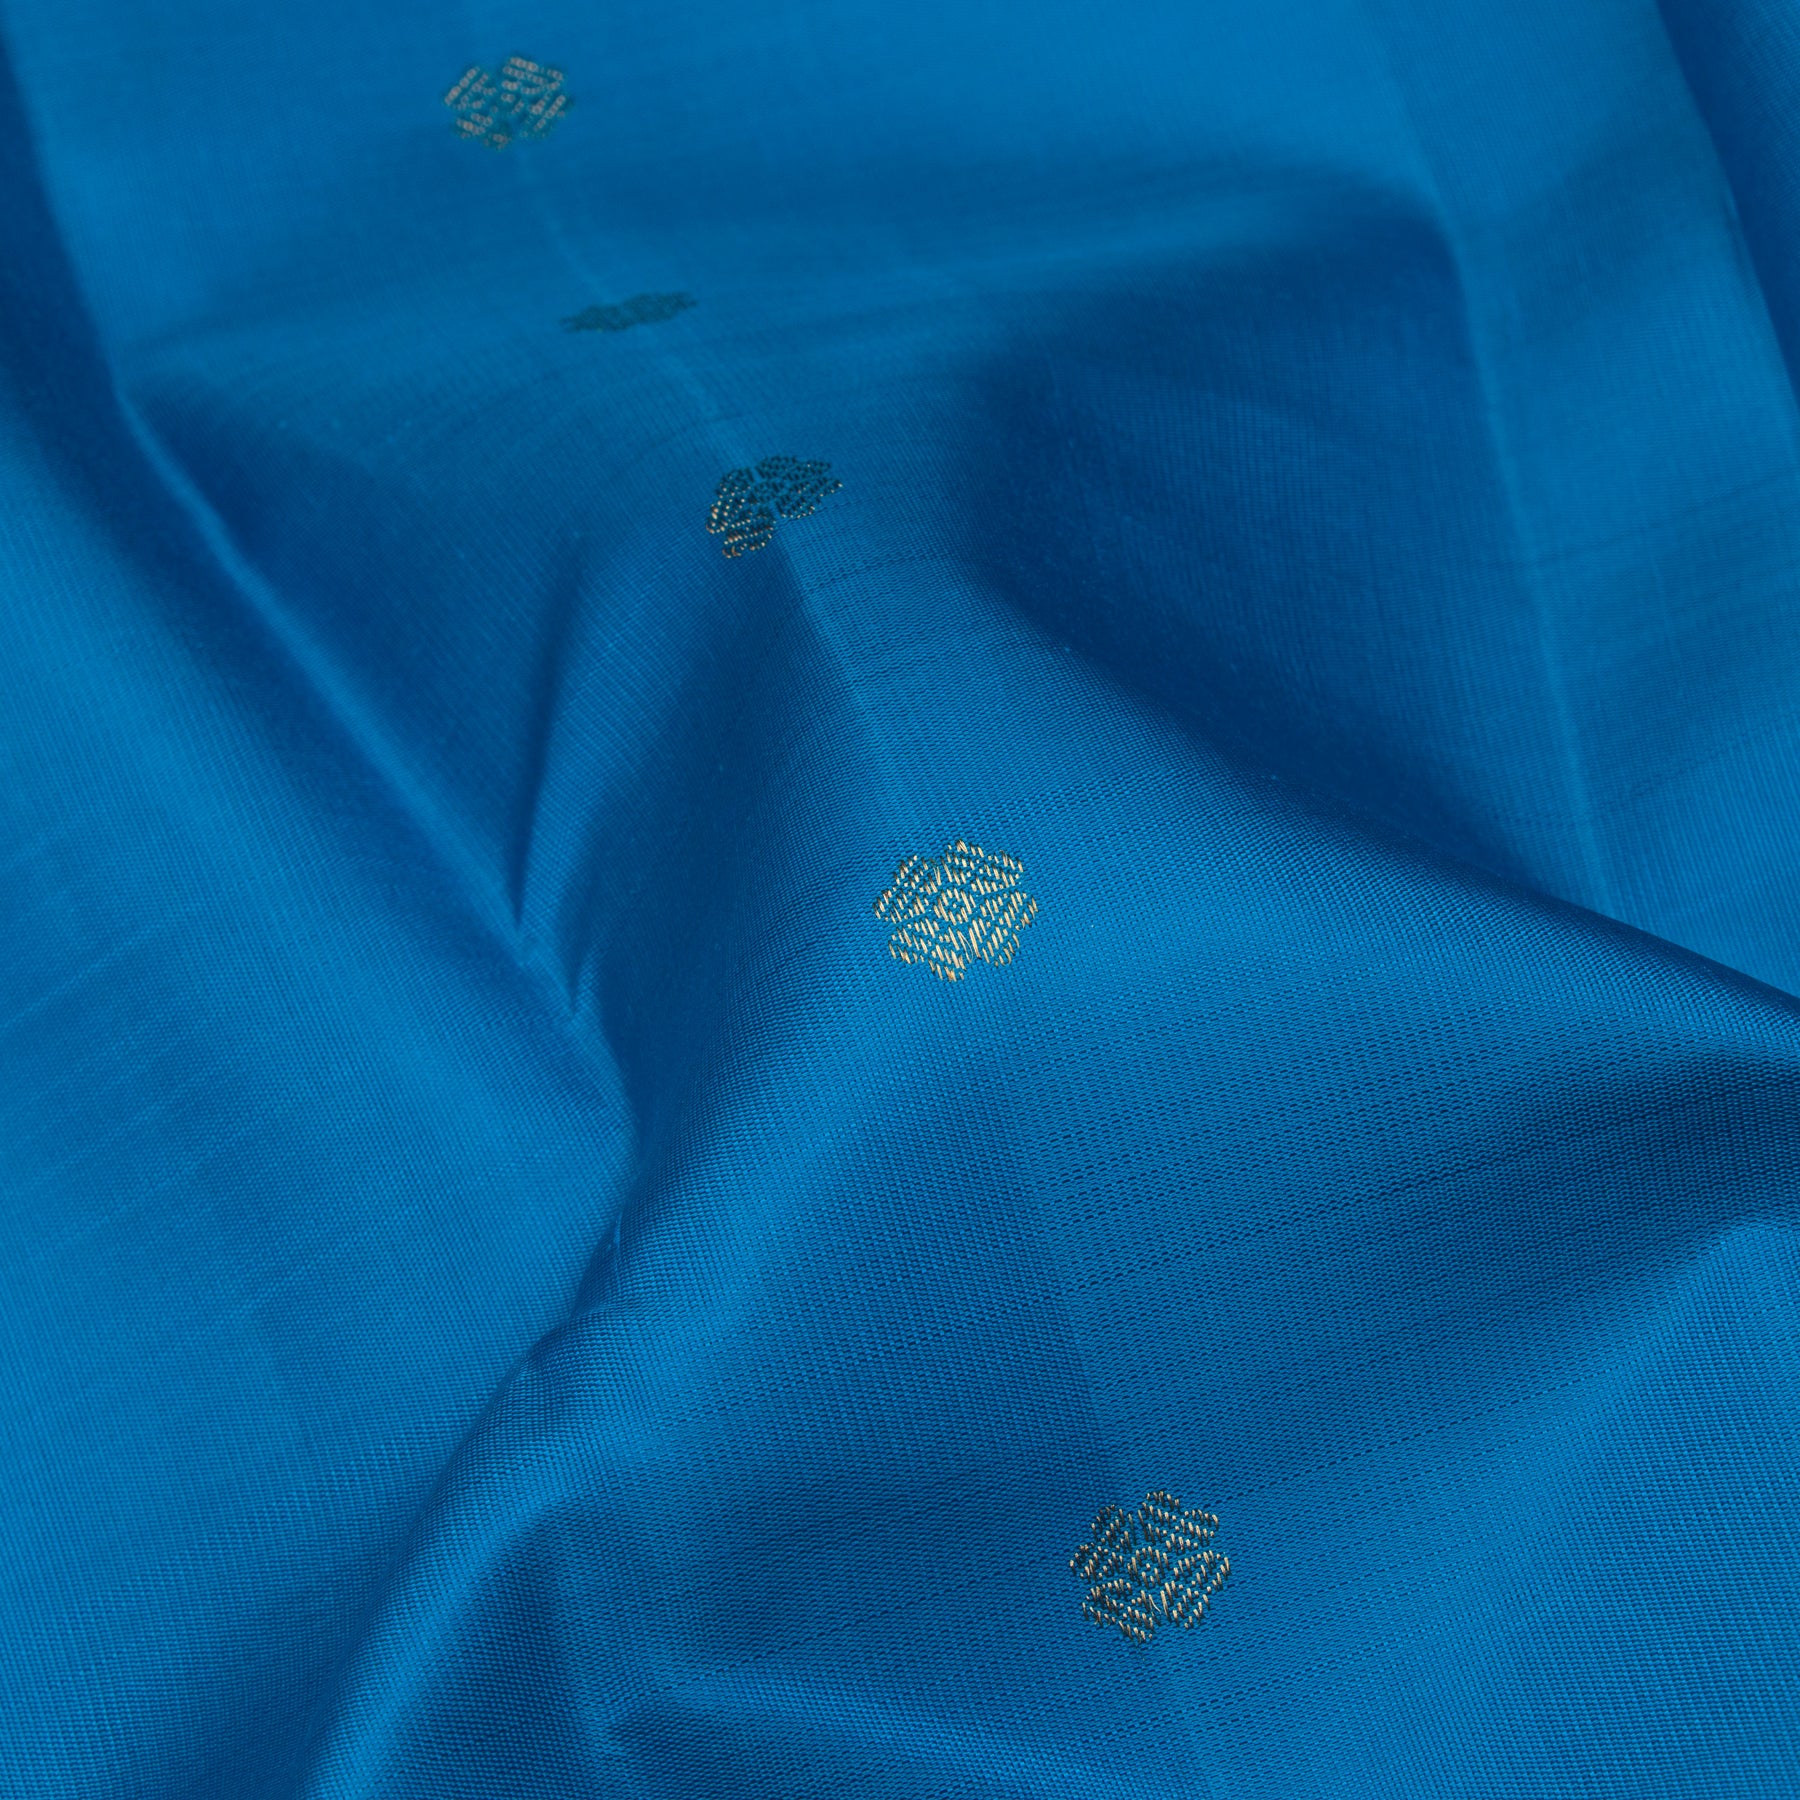 Kanakavalli Kanjivaram Silk Sari 23-595-HS001-12176 - Fabric View